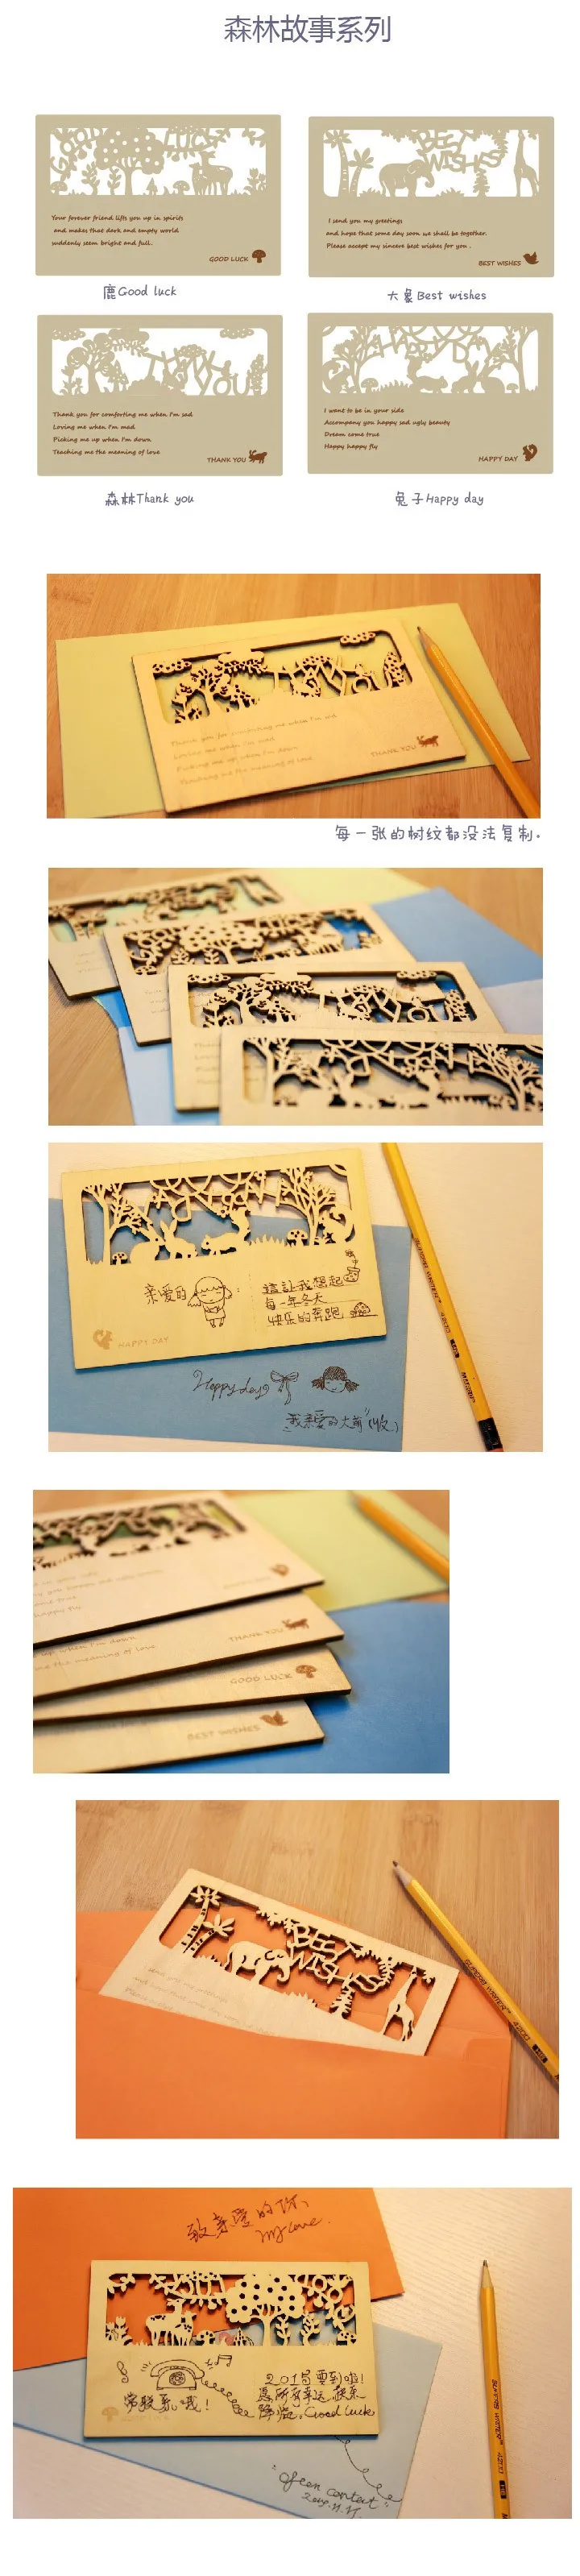 12 шт./лот 12 видов стилей рисования открытка открытки милые деревянные открытки мини карт показывающие благословение слова Рождество